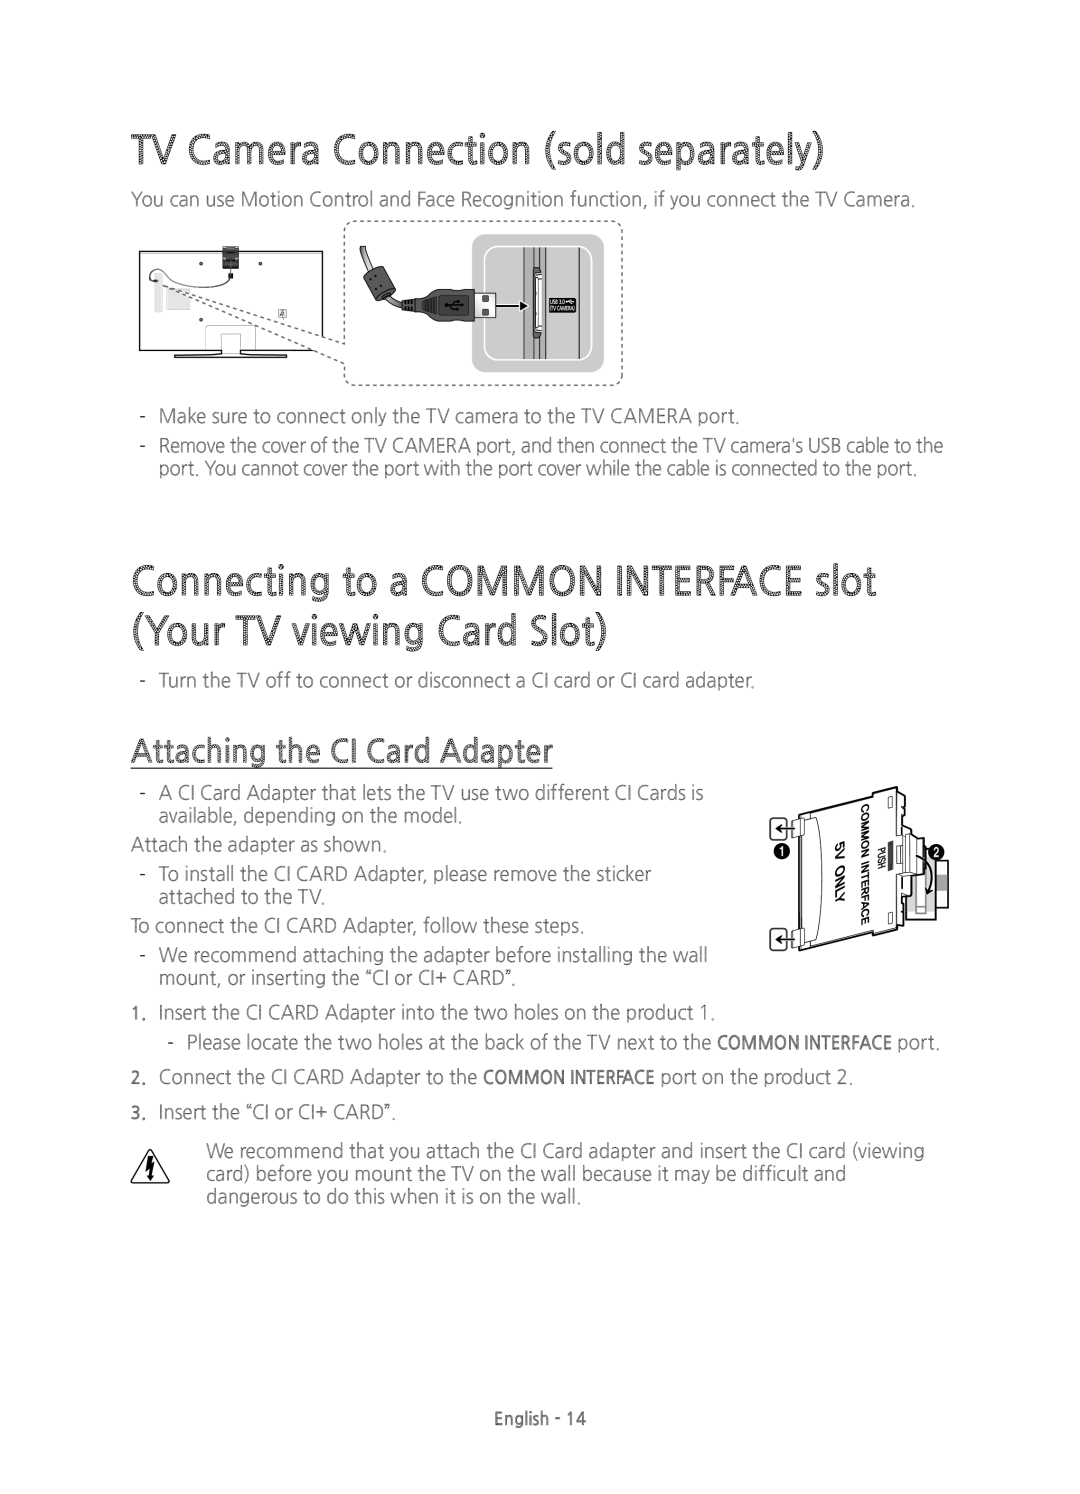 Samsung UE78JU7500TXXU, UE48JU7500TXXC, UE78JU7500TXZF TV Camera Connection sold separately, Attaching the CI Card Adapter 